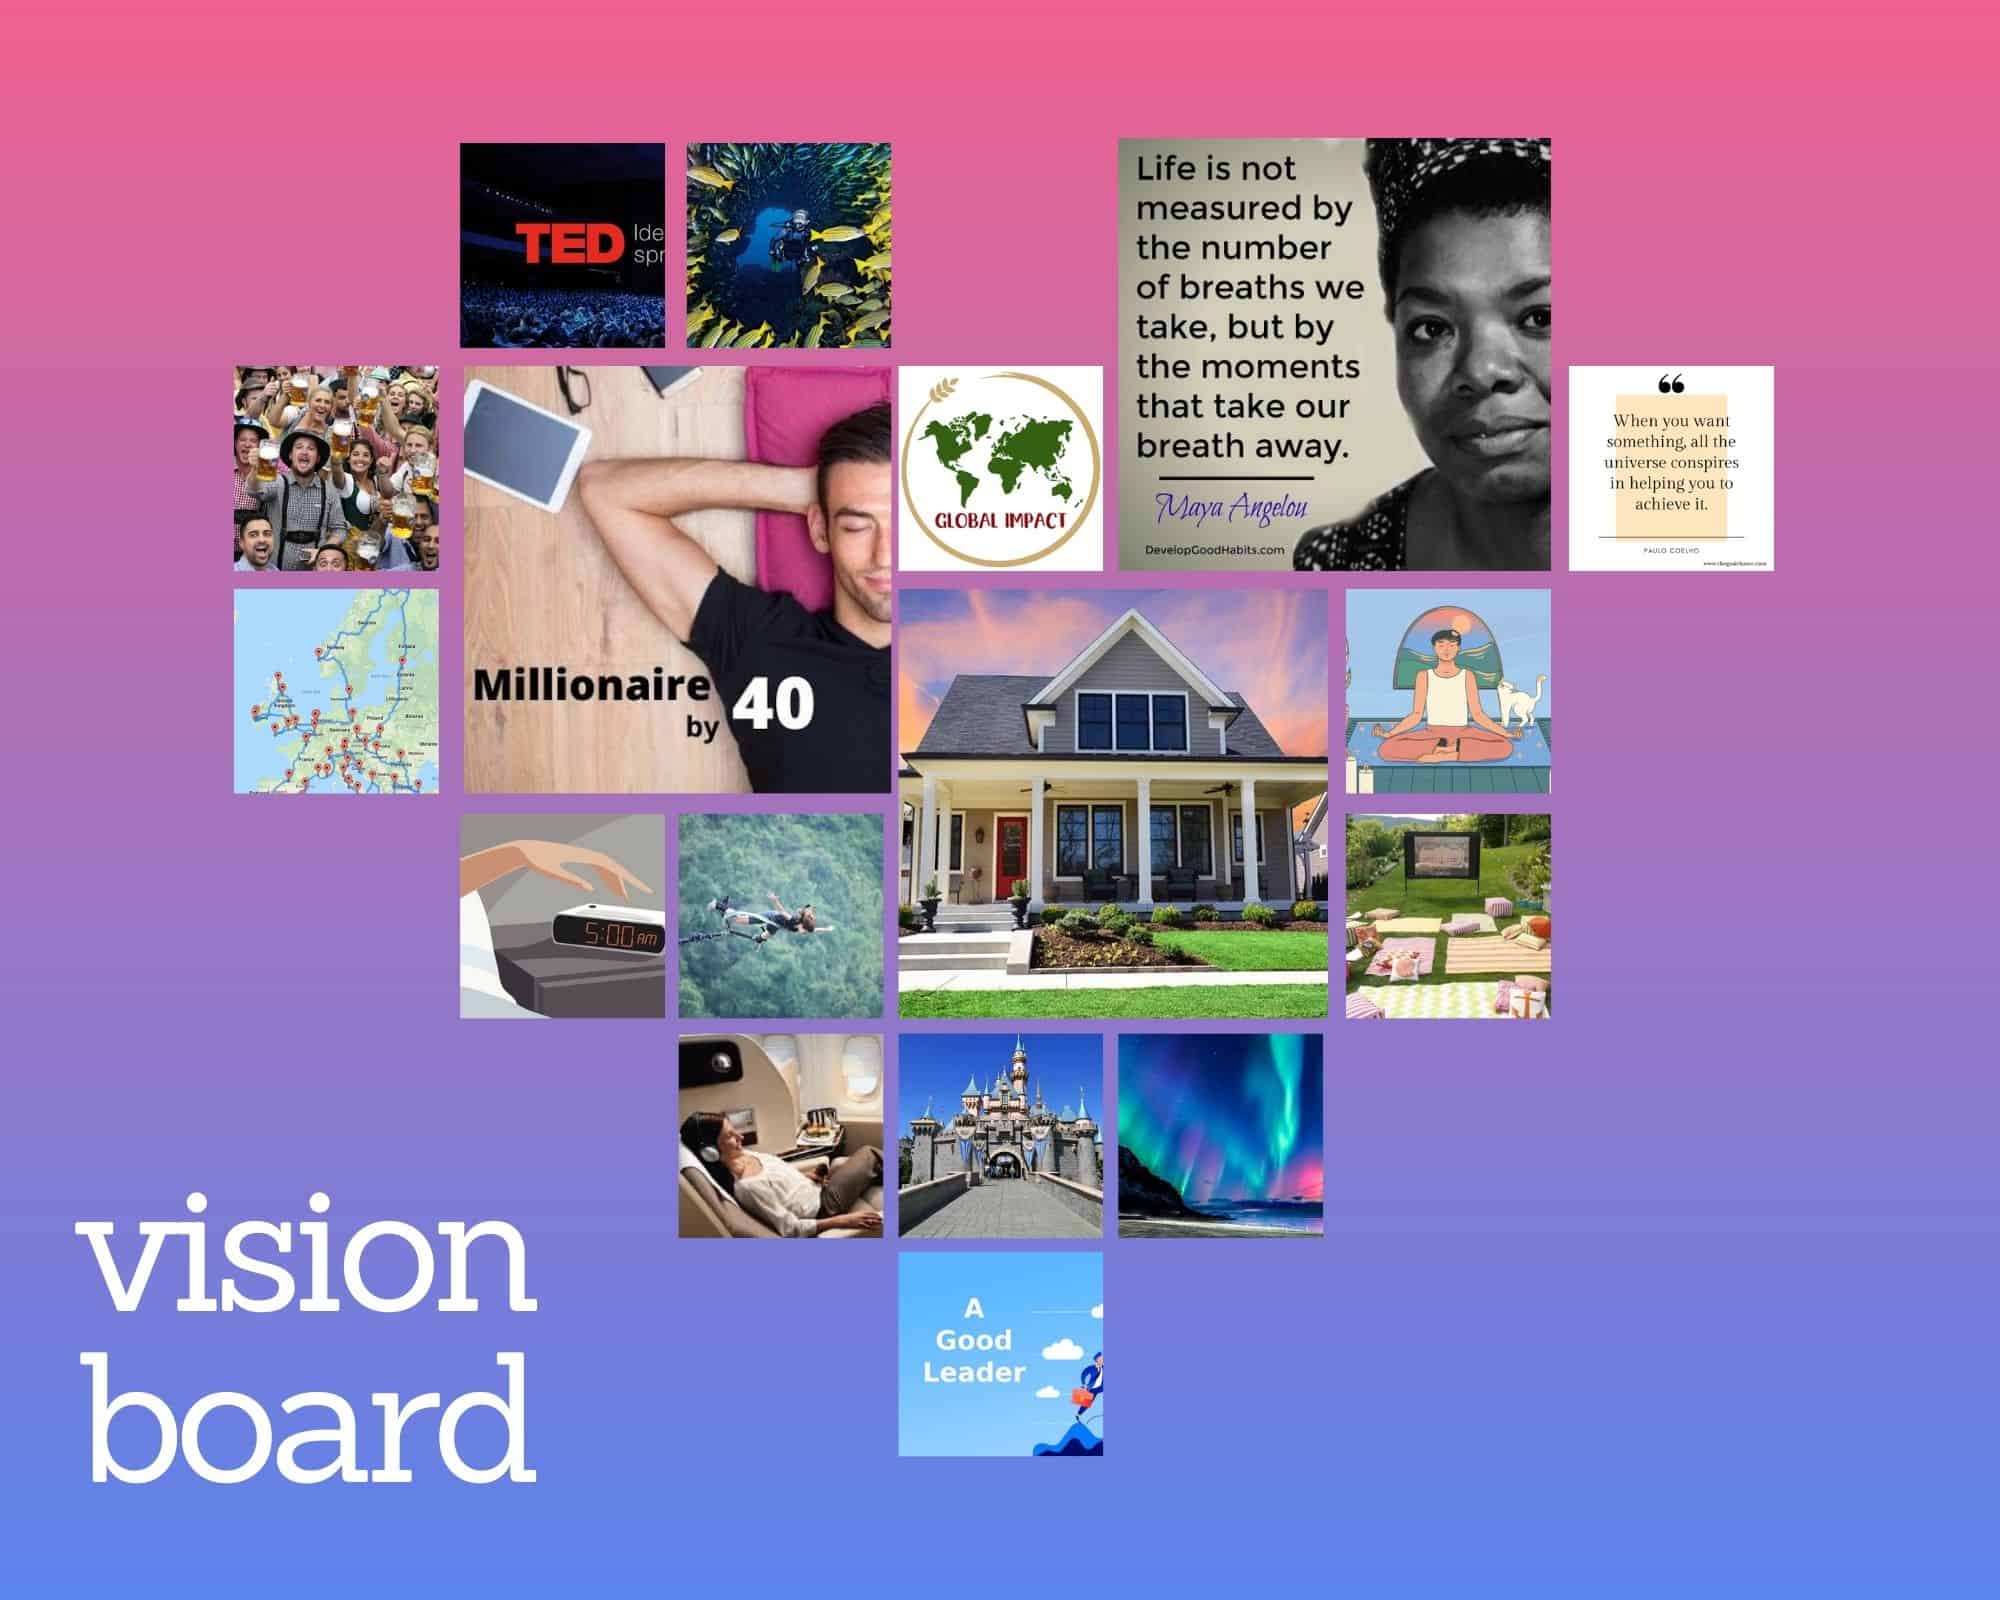 A vision board